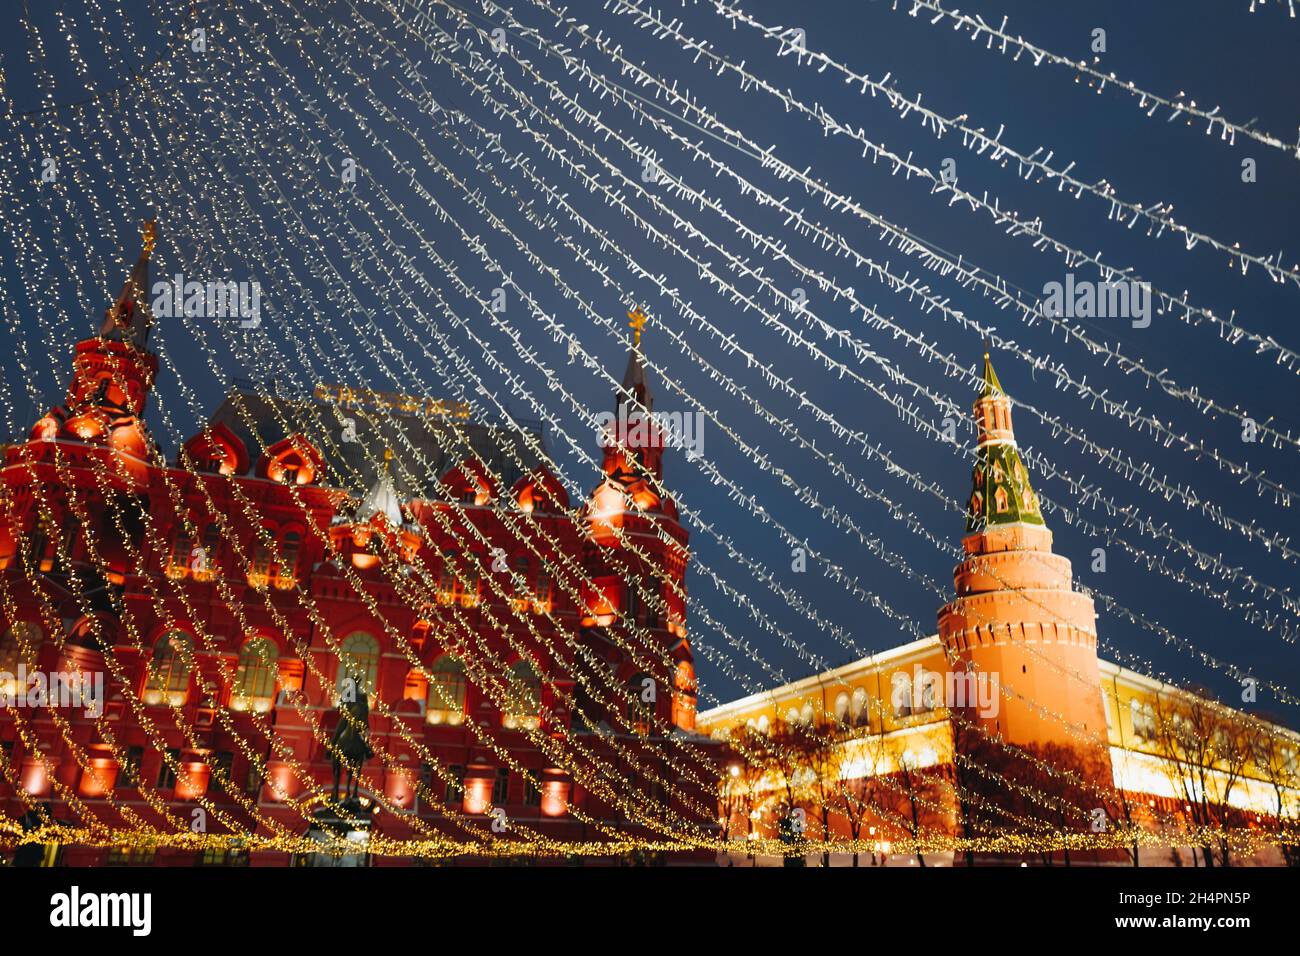 Weihnachtsbaum auf dem Roten Platz Moskau geschmückt mit goldenen Kugeln und Girlanden, funkelnden Lichtern. Girlanden von goldenen Lichtern breiten sich aus der Spitze des t aus Stockfoto